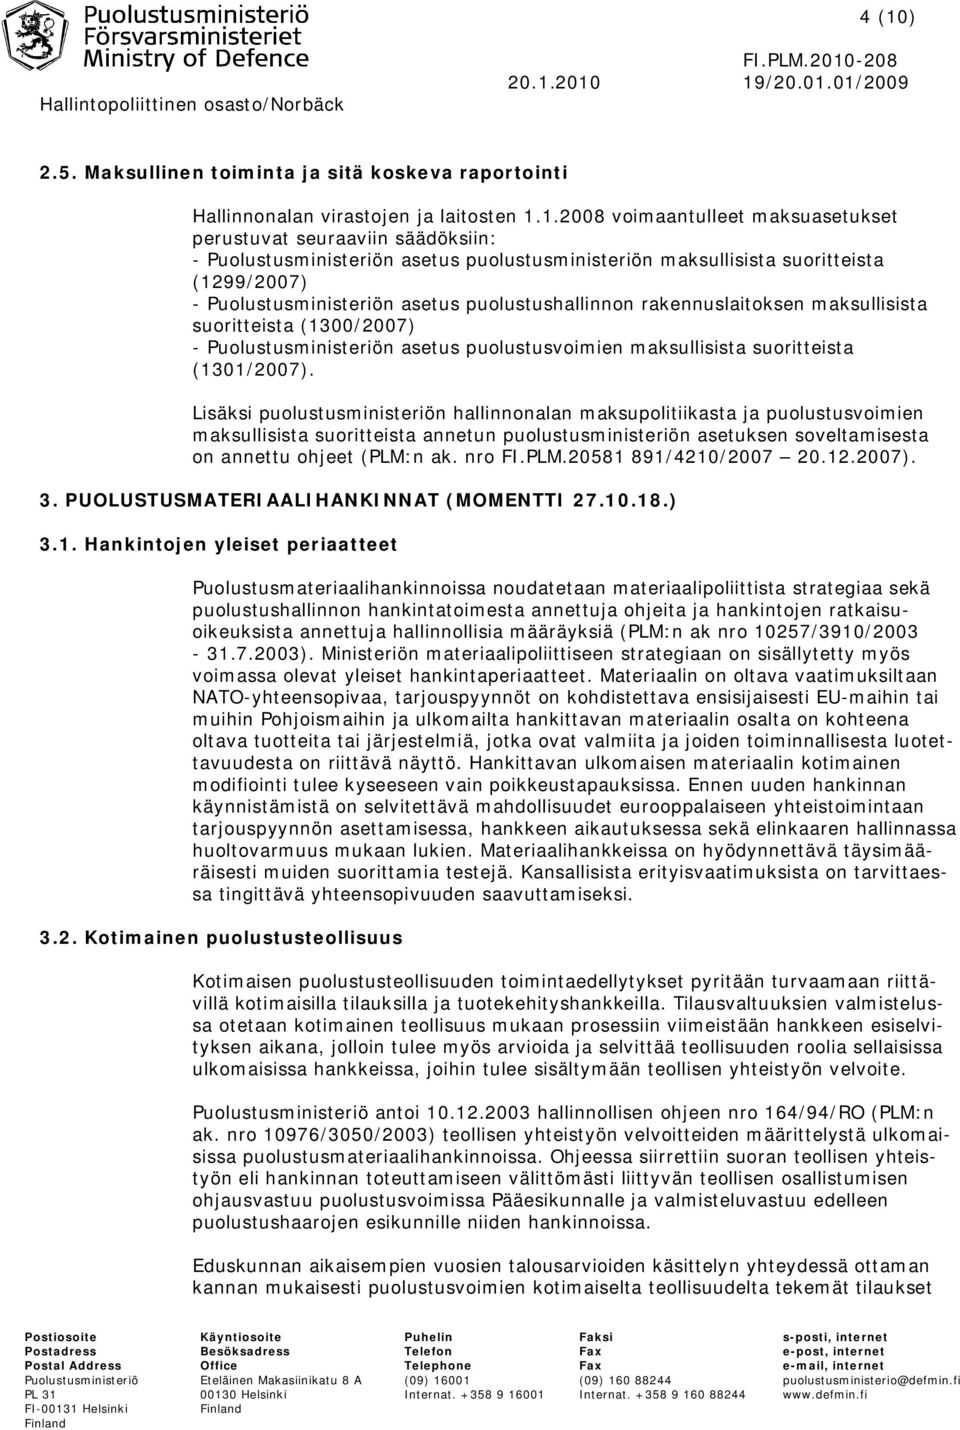 asetus puolustusvoimien maksullisista suoritteista (1301/2007).